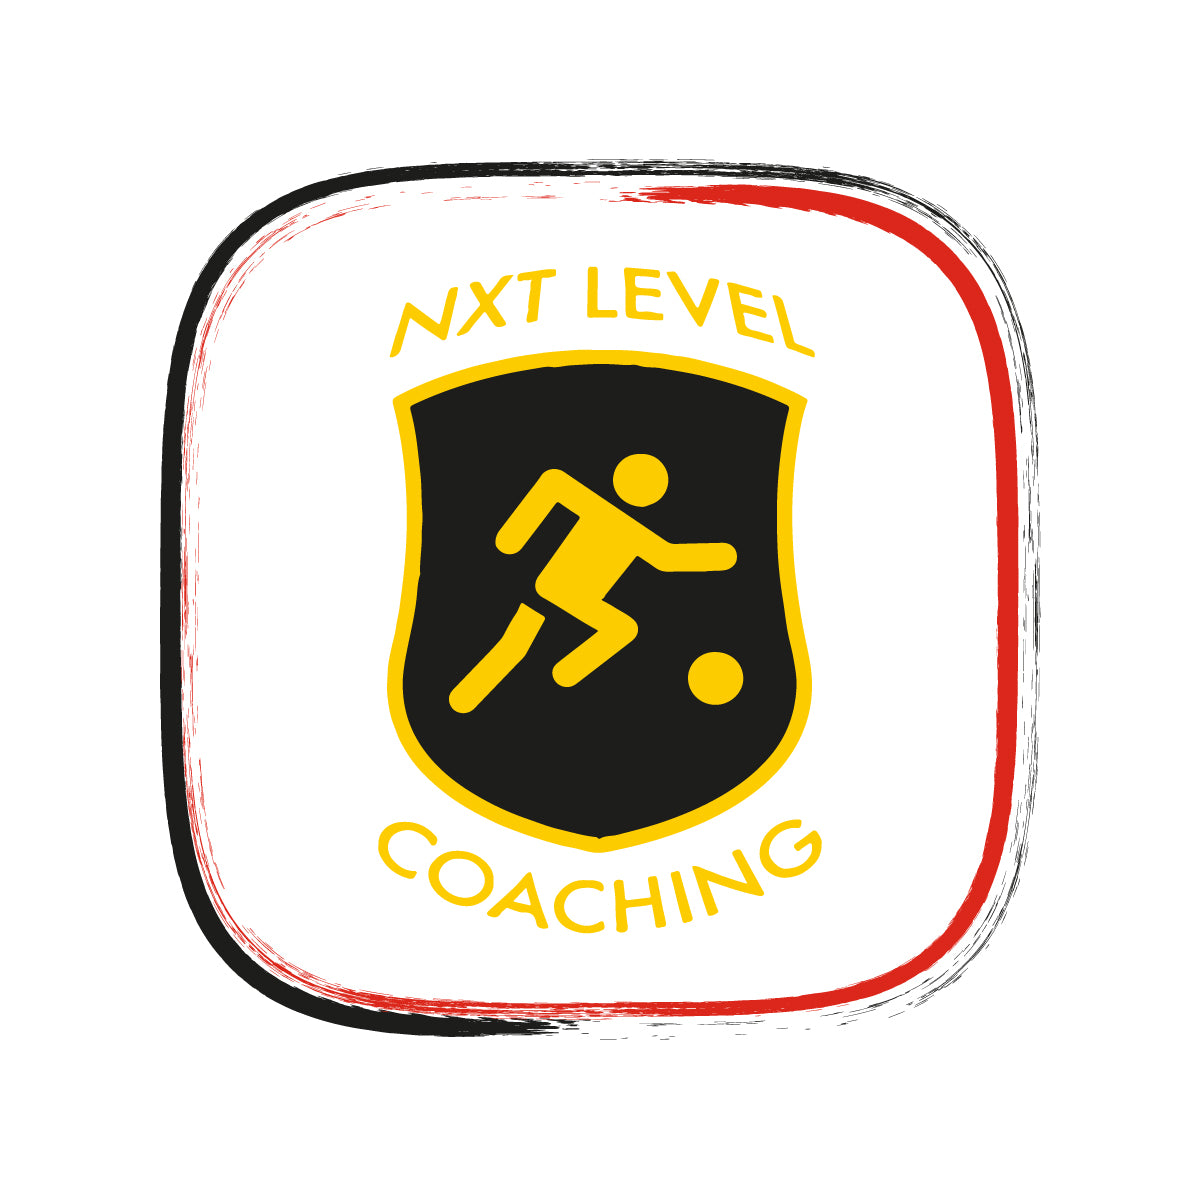 NXT Level Coaching